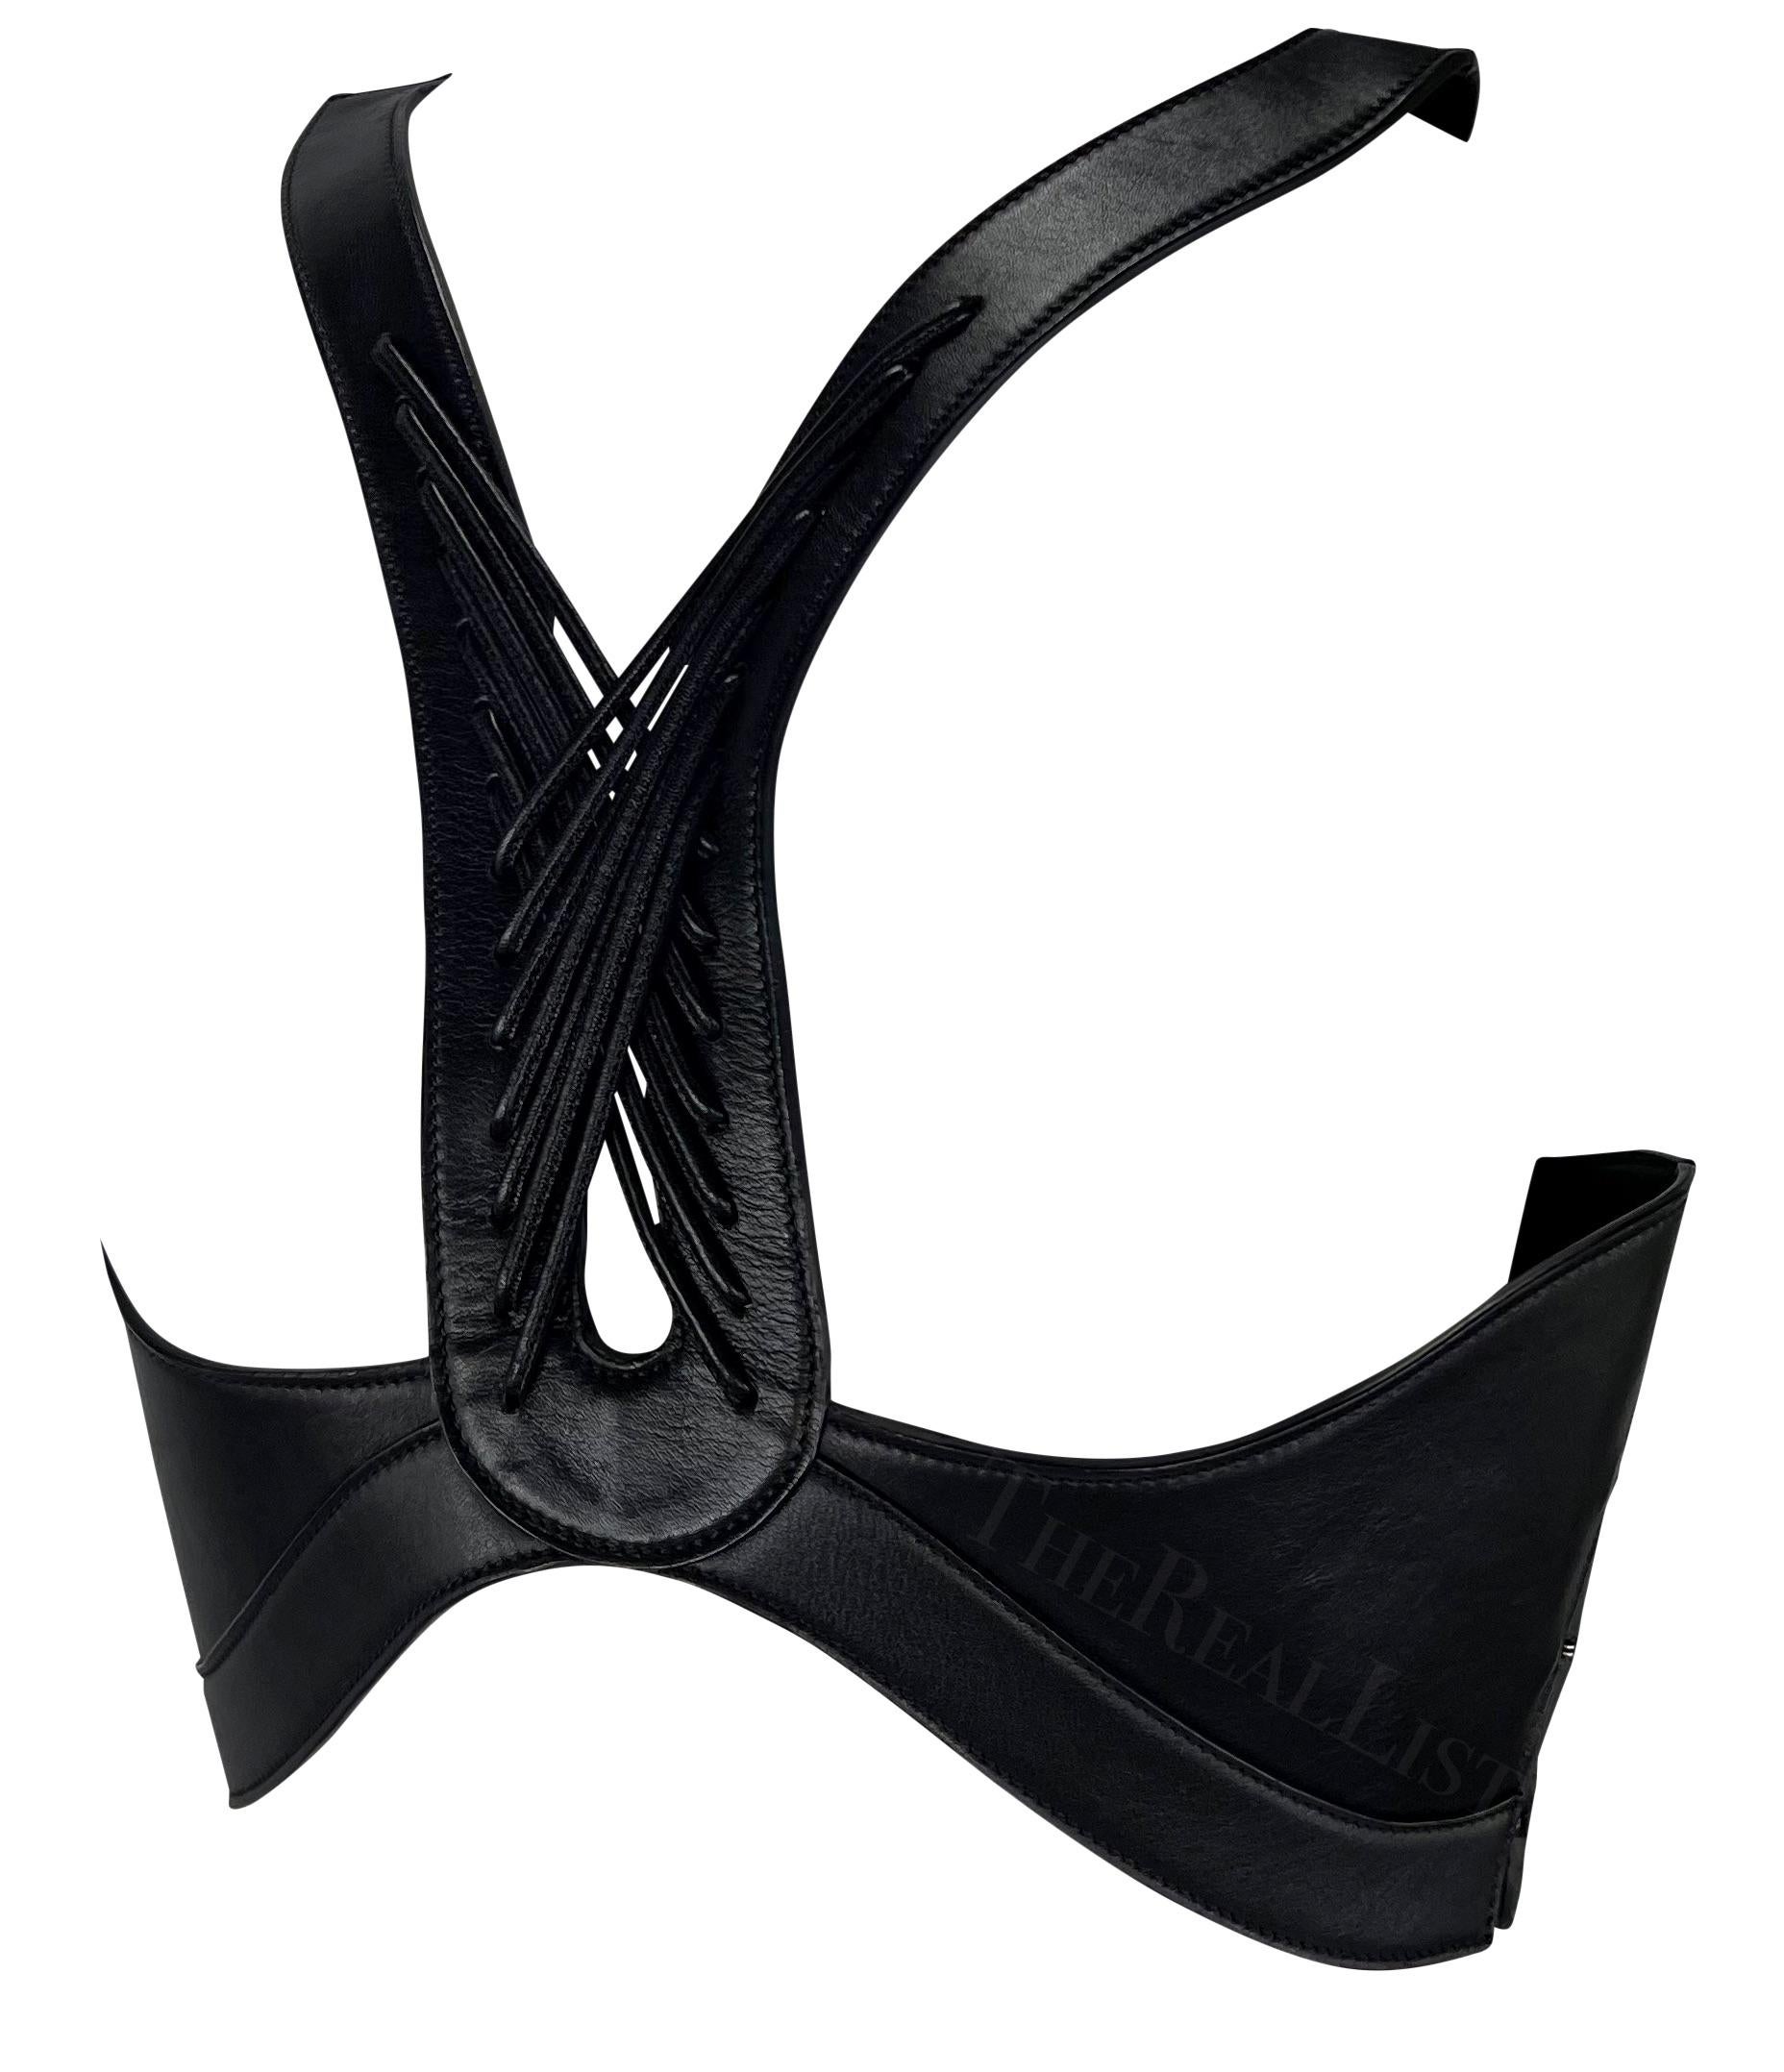 Ich präsentiere ein unglaubliches schwarzes Ledergeschirr von Alexander McQueen.
Betreten Sie das Reich der Avantgarde-Mode mit diesem fesselnden Leder-Harness-Top aus den 2000er Jahren. Dieses sorgfältig gefertigte, außergewöhnliche Stück zeigt die